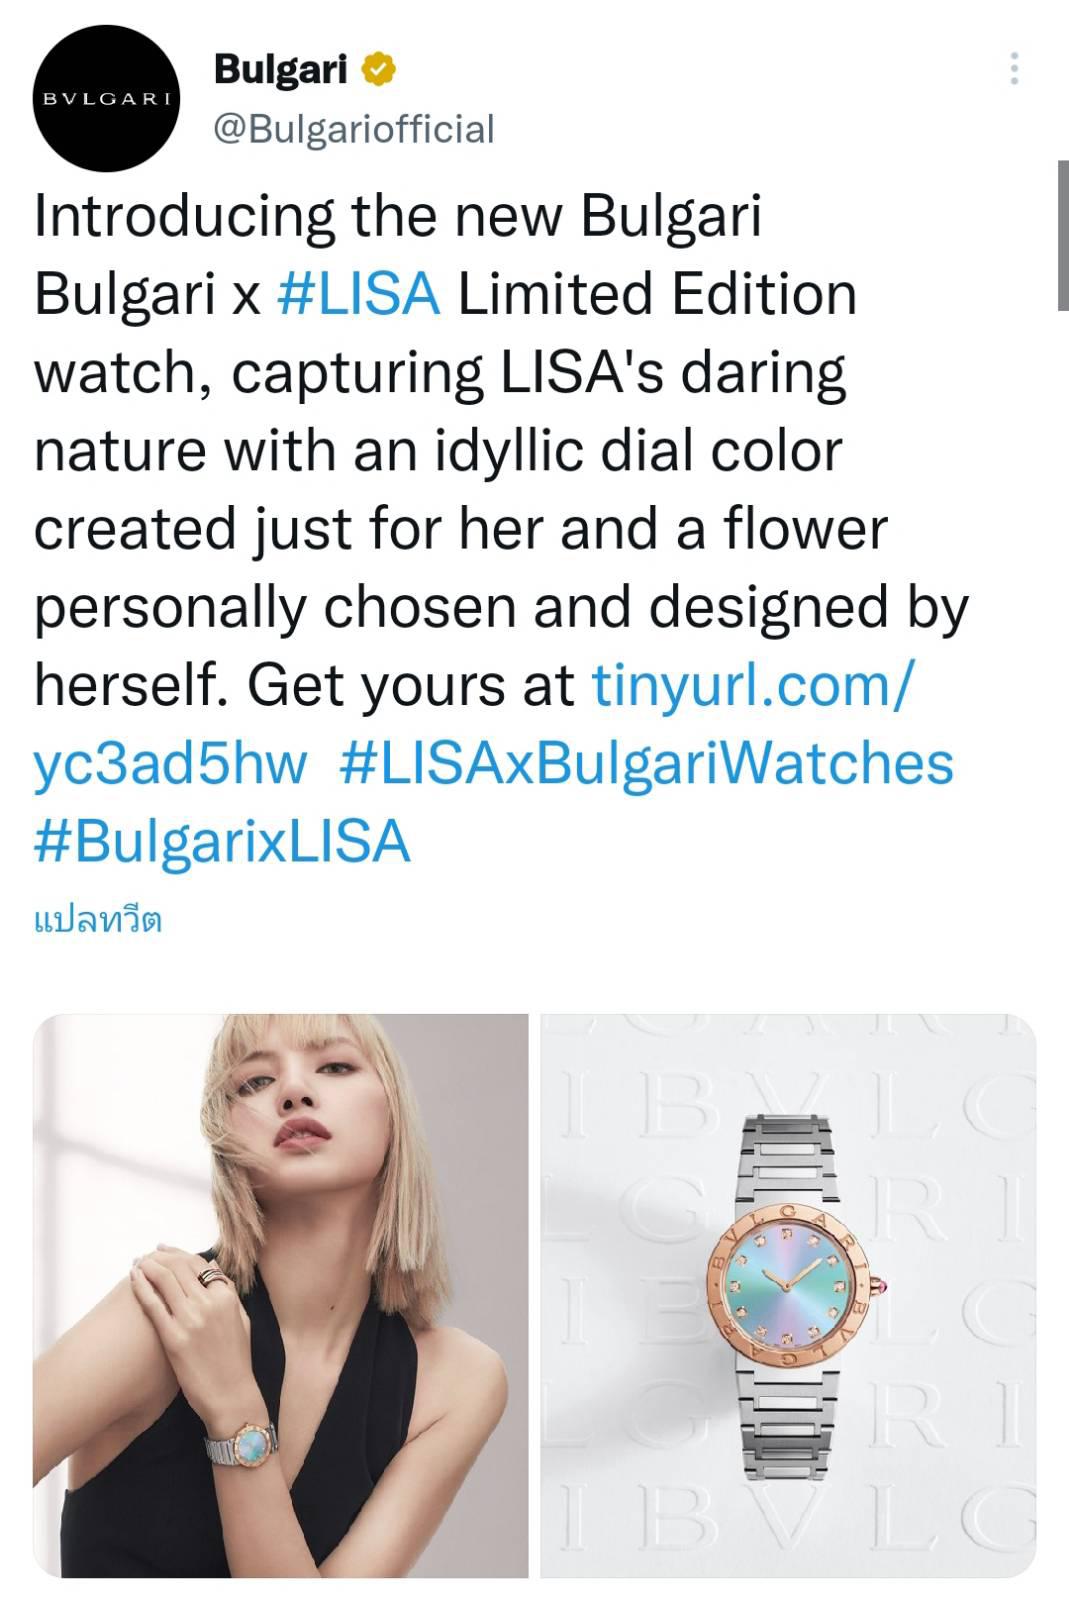 บูลการีจะเปิดตัวนาฬิกาลิมิเต็ดอิดิชั่นรุ่น BVLGARI X LISA ออกแบบโดย #LISA  #BLACKPINK มีเพียง 1,000 เรือนทั่วโลก - Pantip